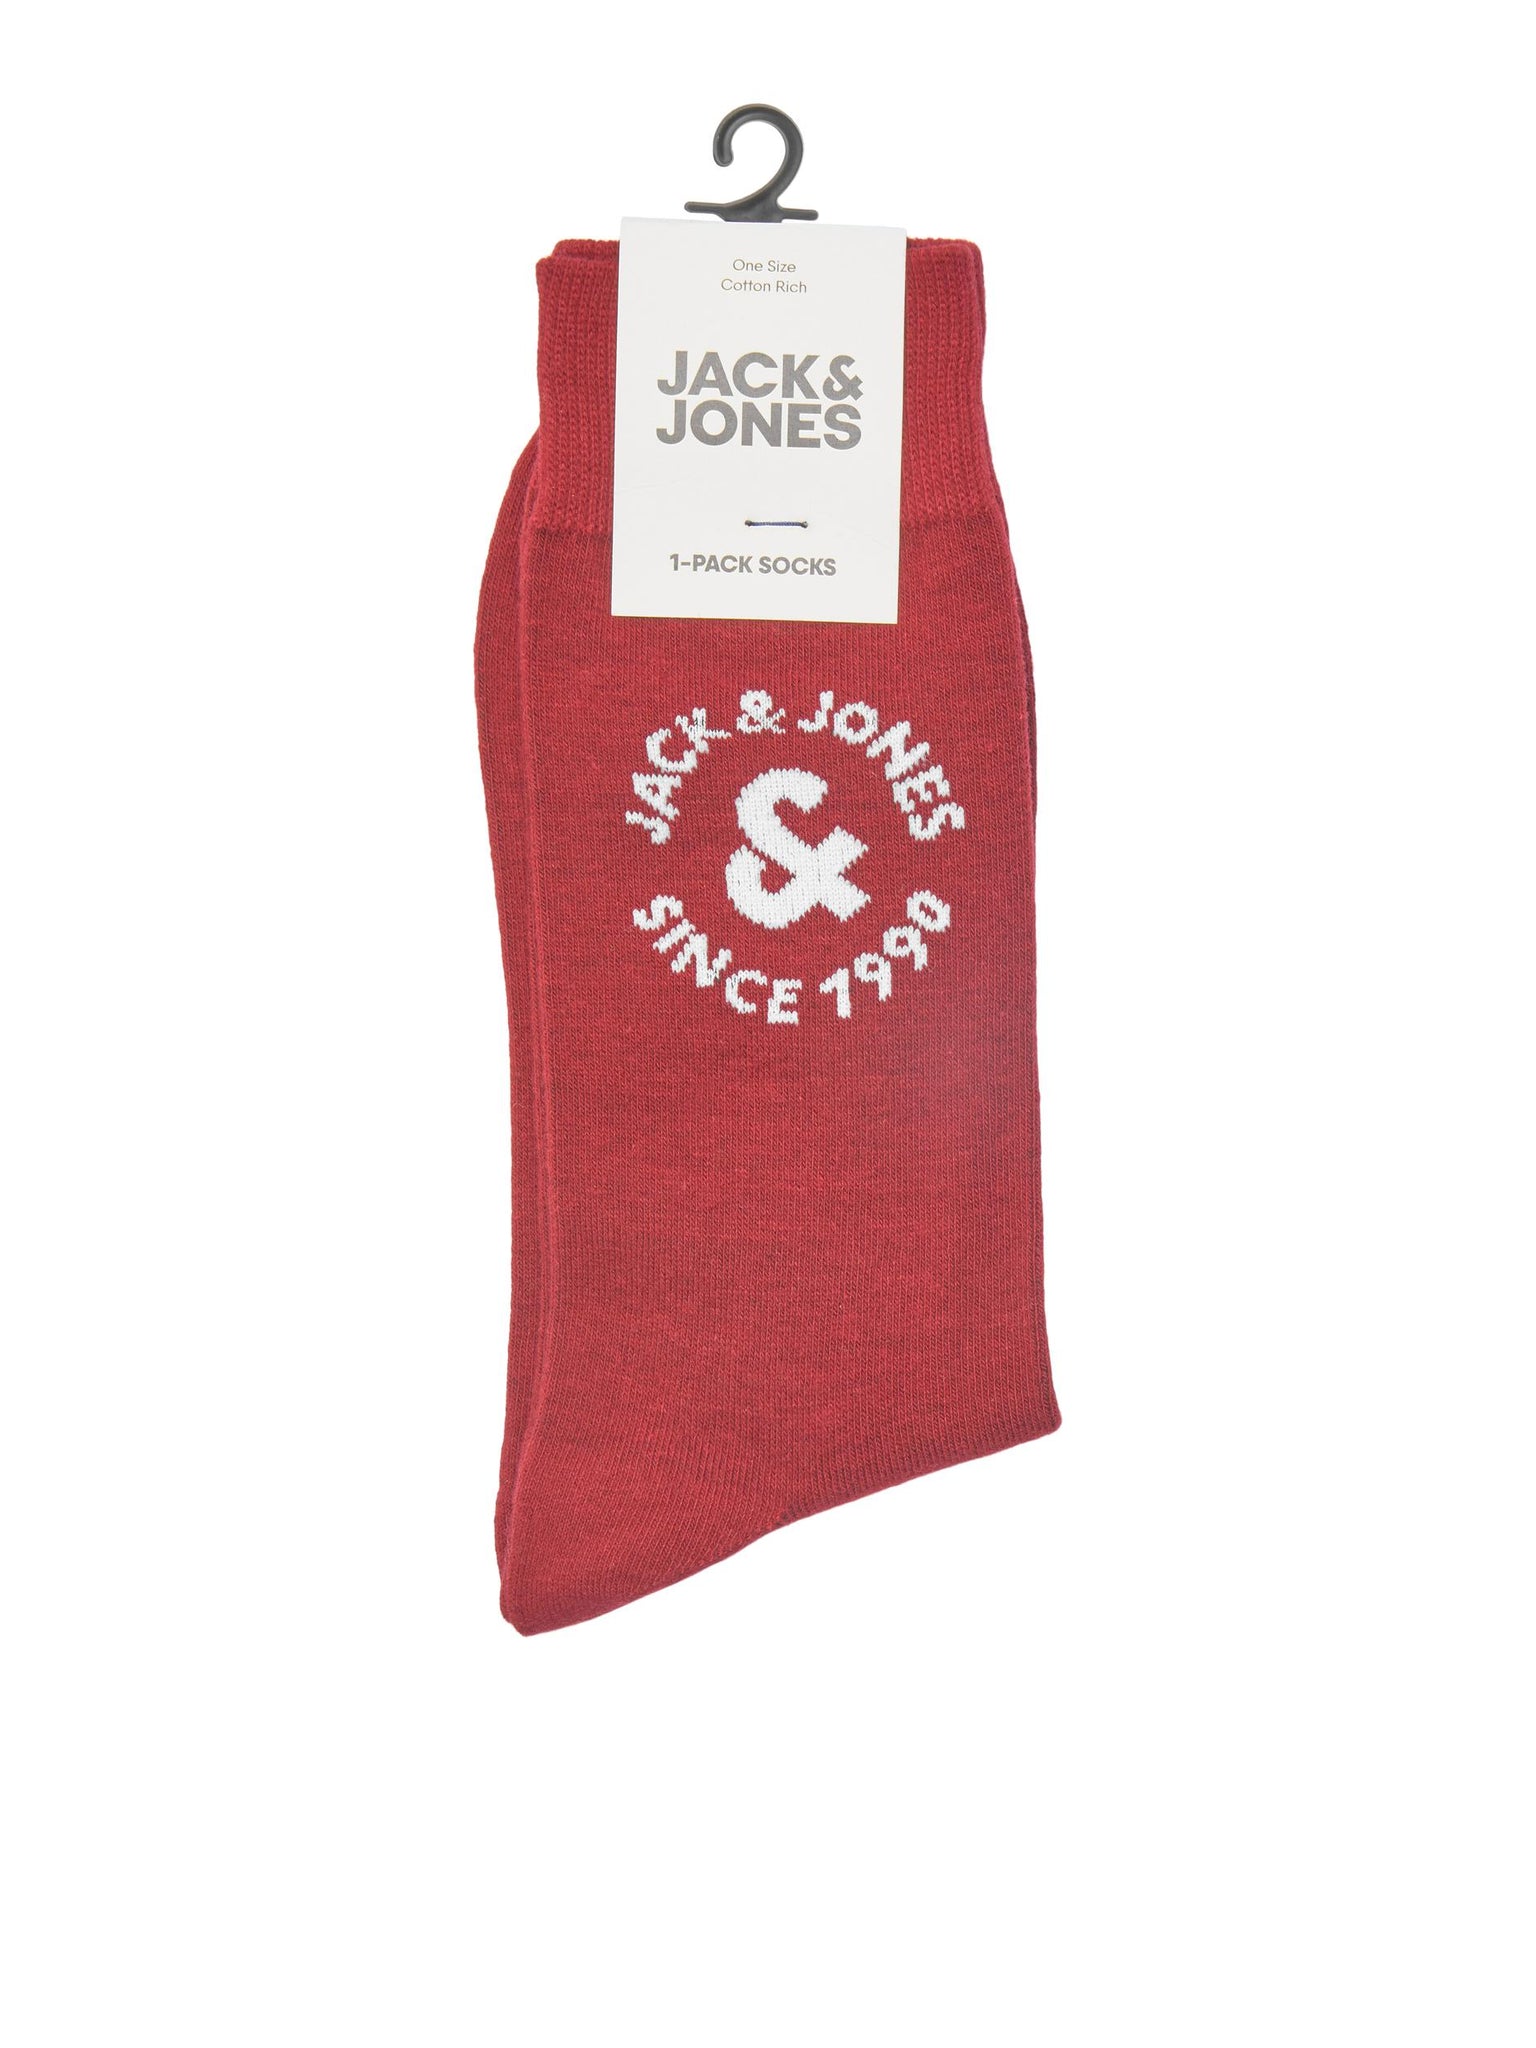 Pair of Jack &amp; Jones 1990 Wine socks